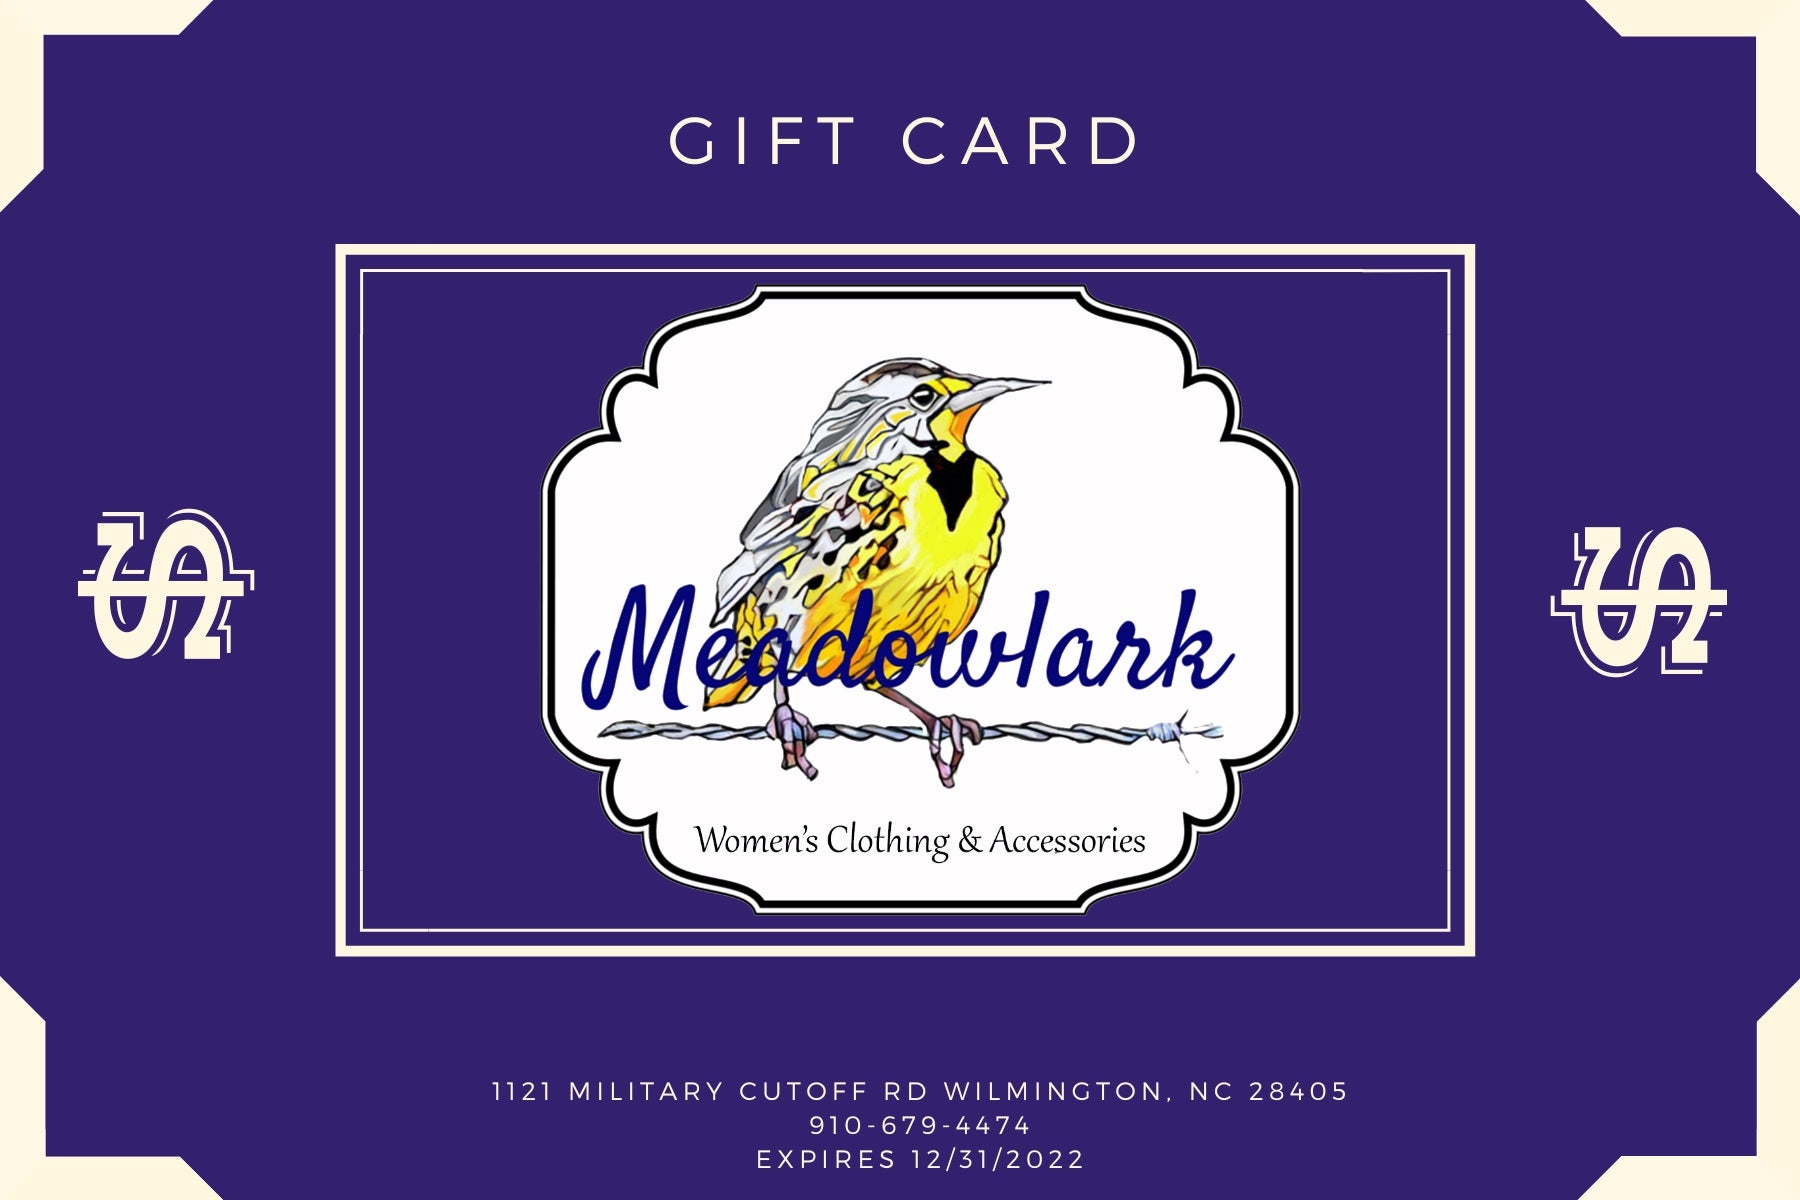 Meadlowlark Gift Card – Meadowlark